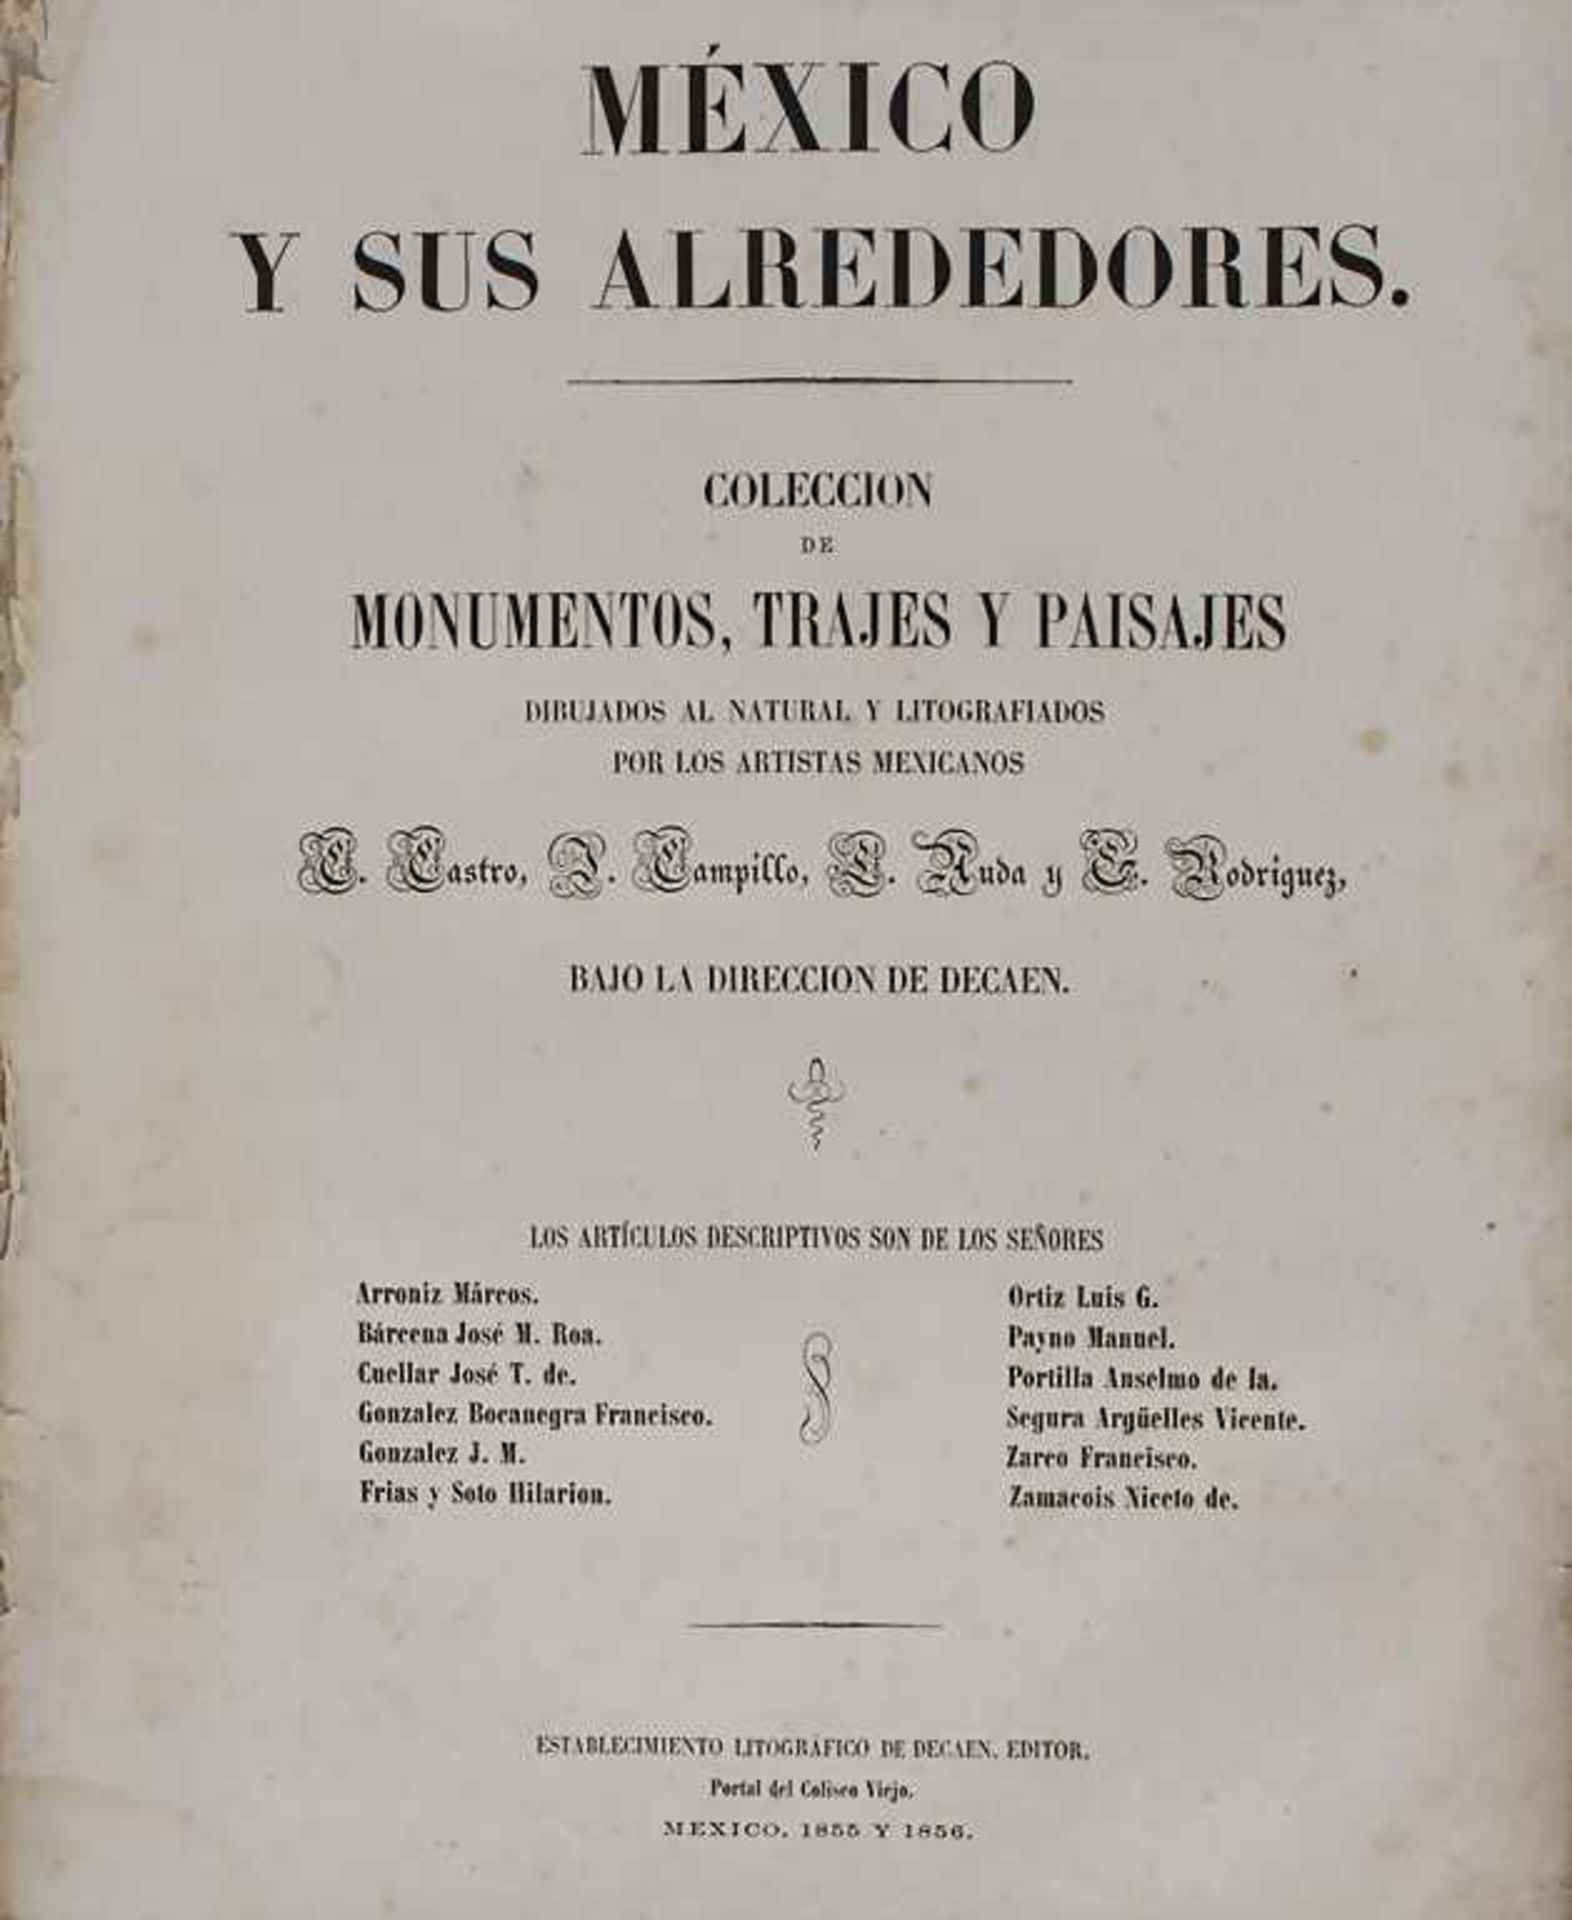 México y sus alrededores. Collecion de monumentos, trajes y paisajes, Decaen, Mexico. 1855-